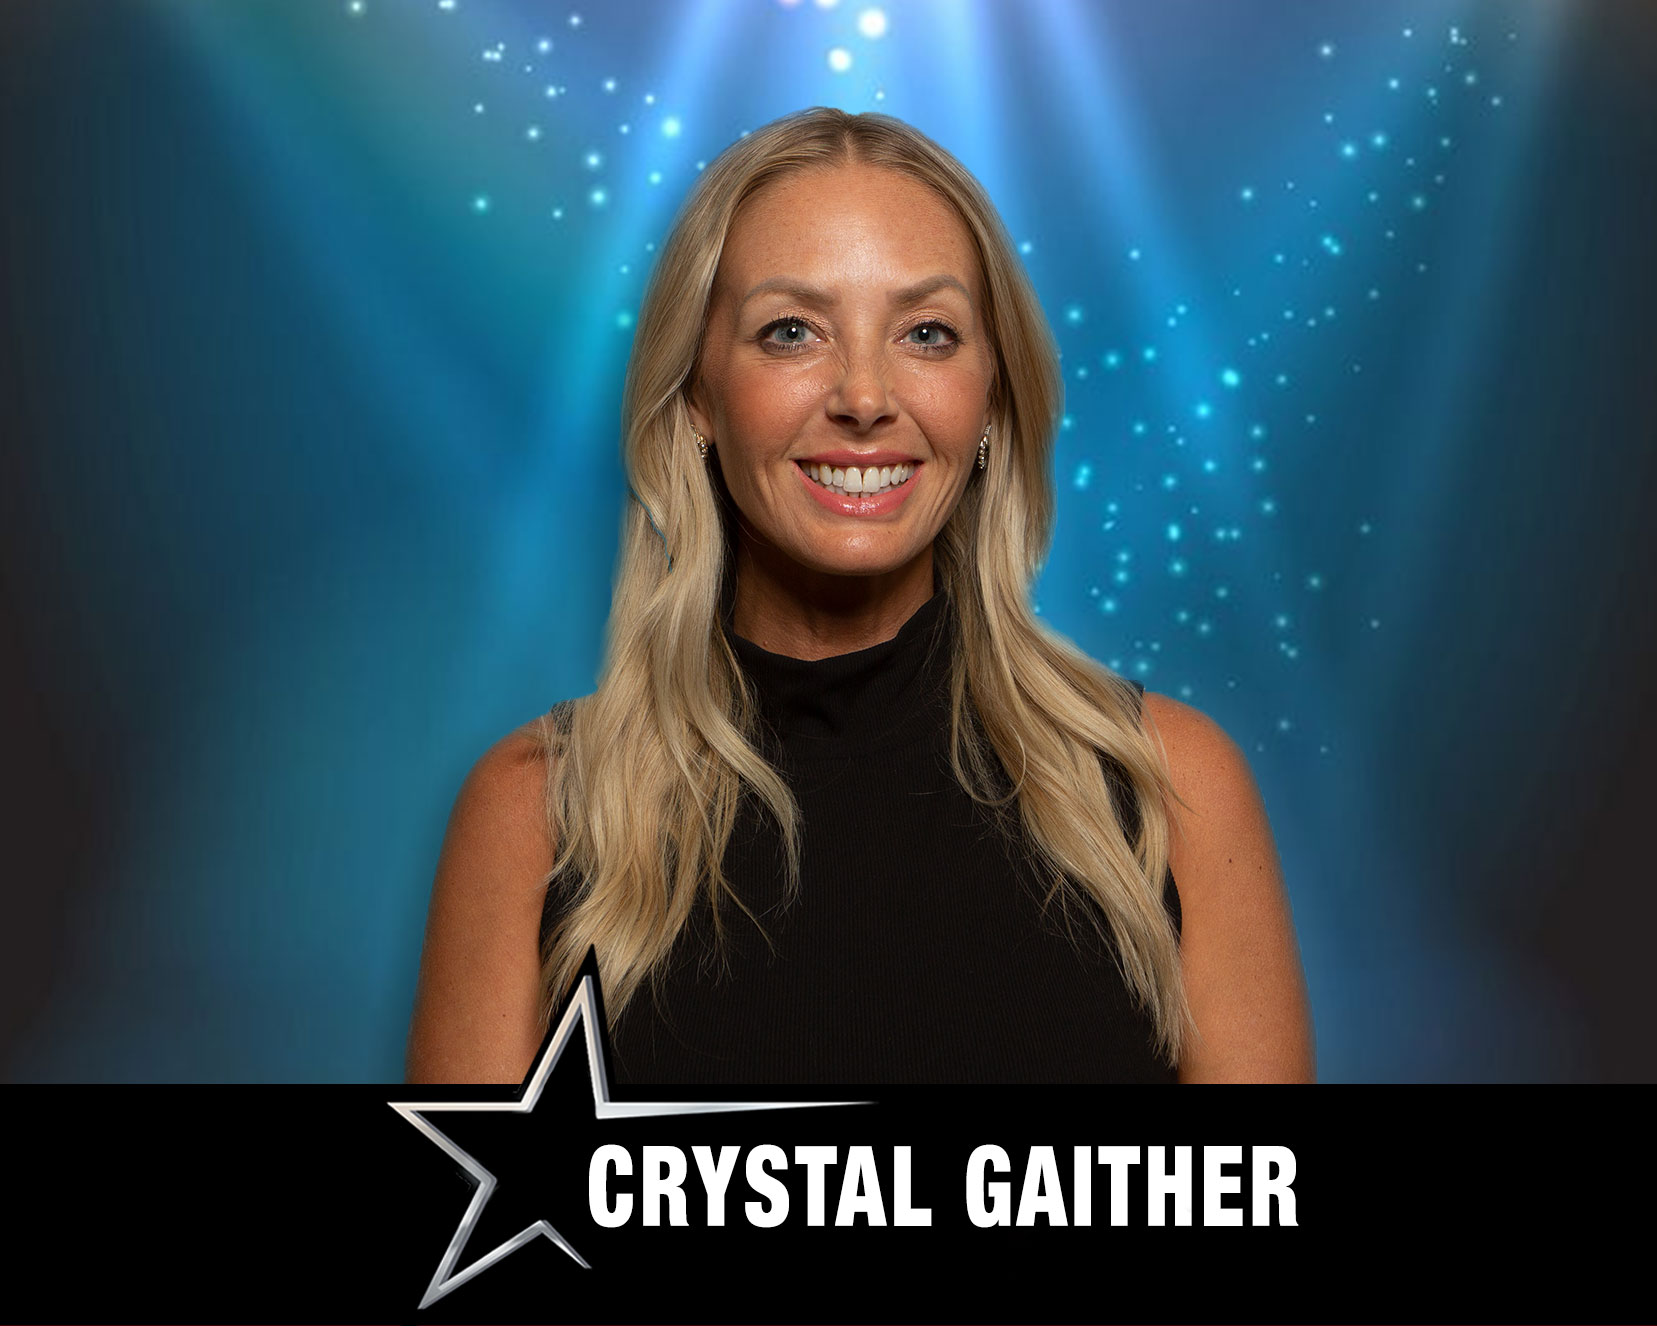 Crystal Gaither